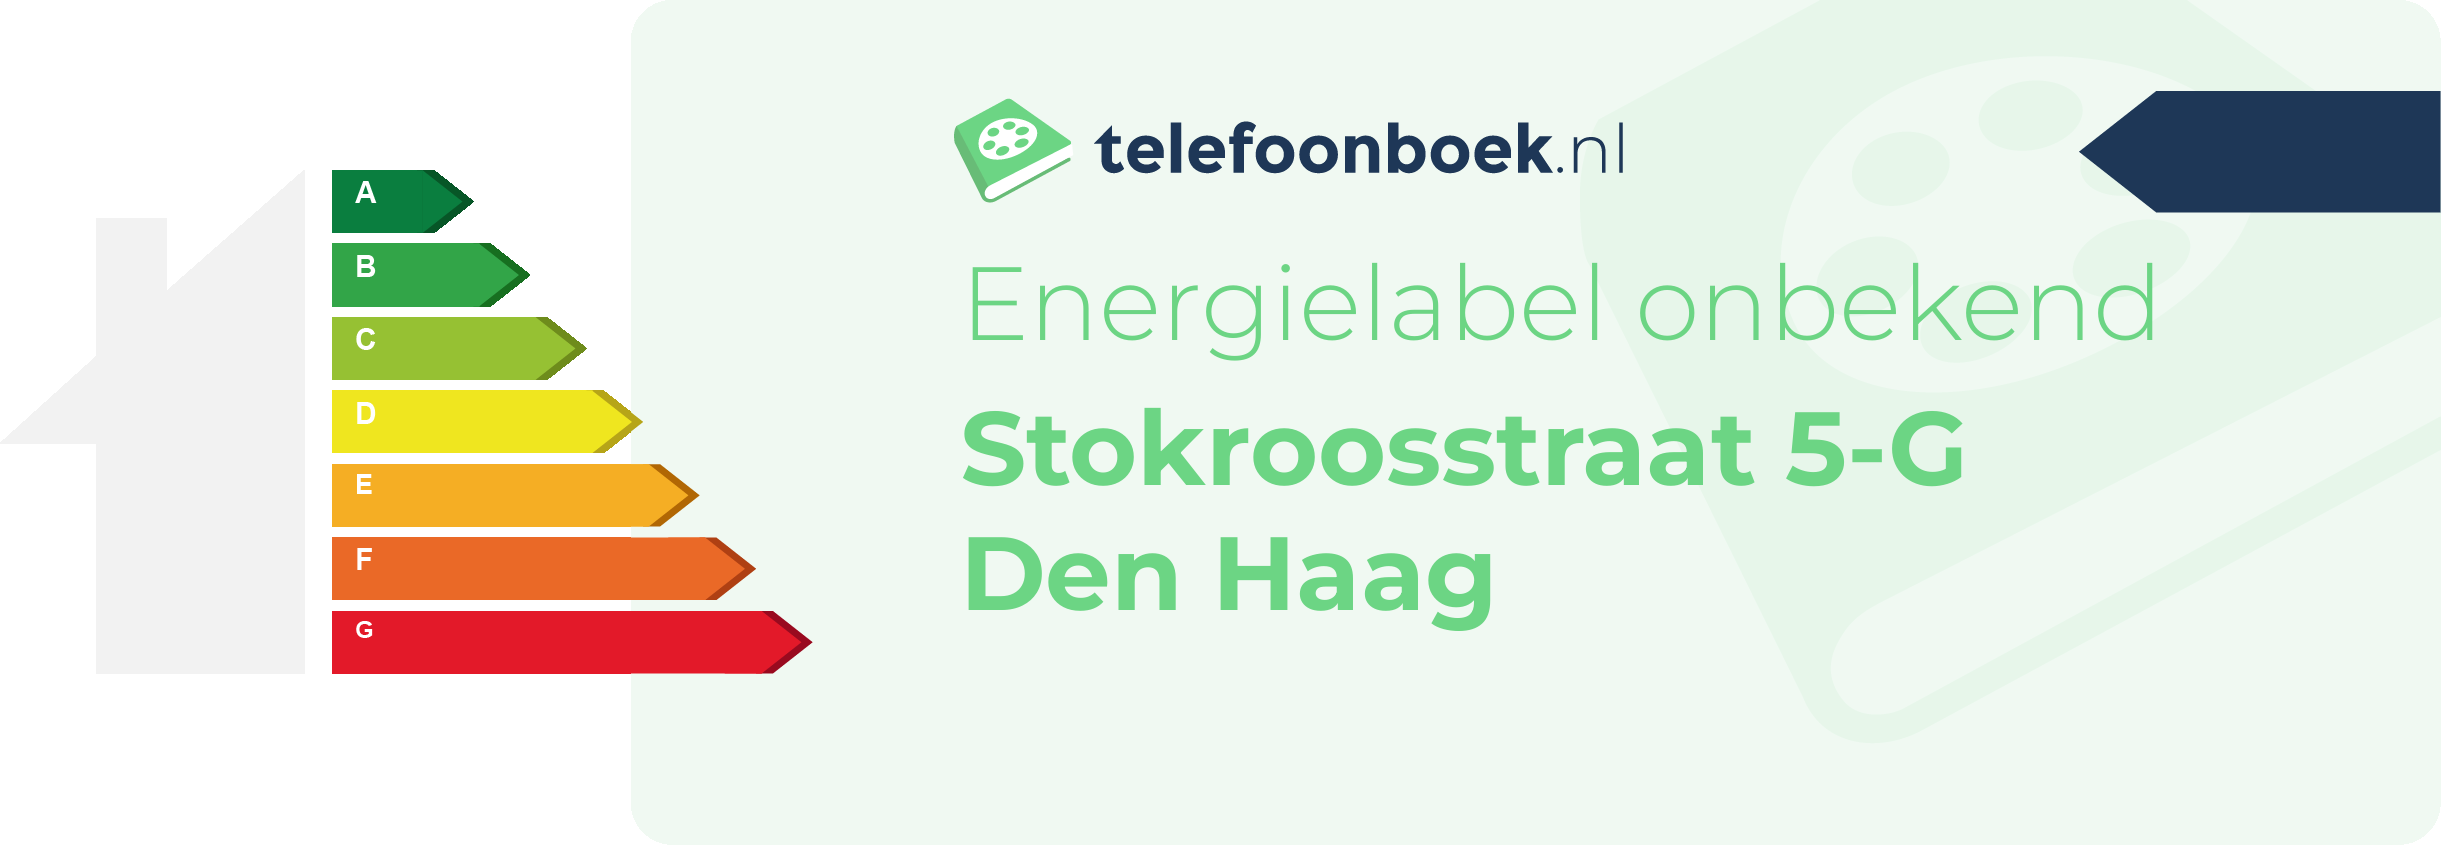 Energielabel Stokroosstraat 5-G Den Haag